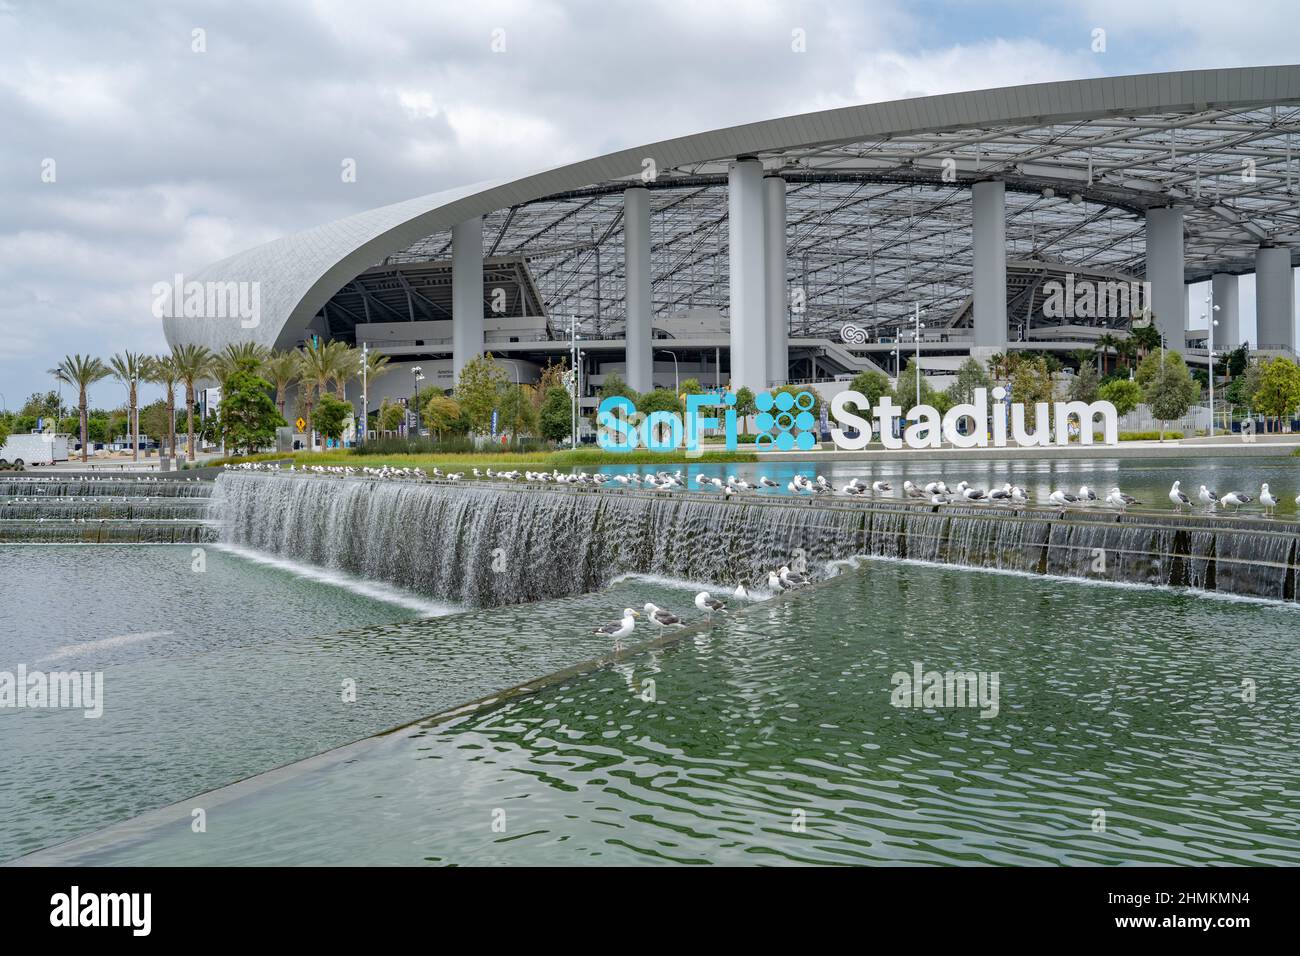 Das Sofi Stadium mit Wasserfall ist ein modernes Fußballstadion in Los Angeles, Kalifornien Stockfoto